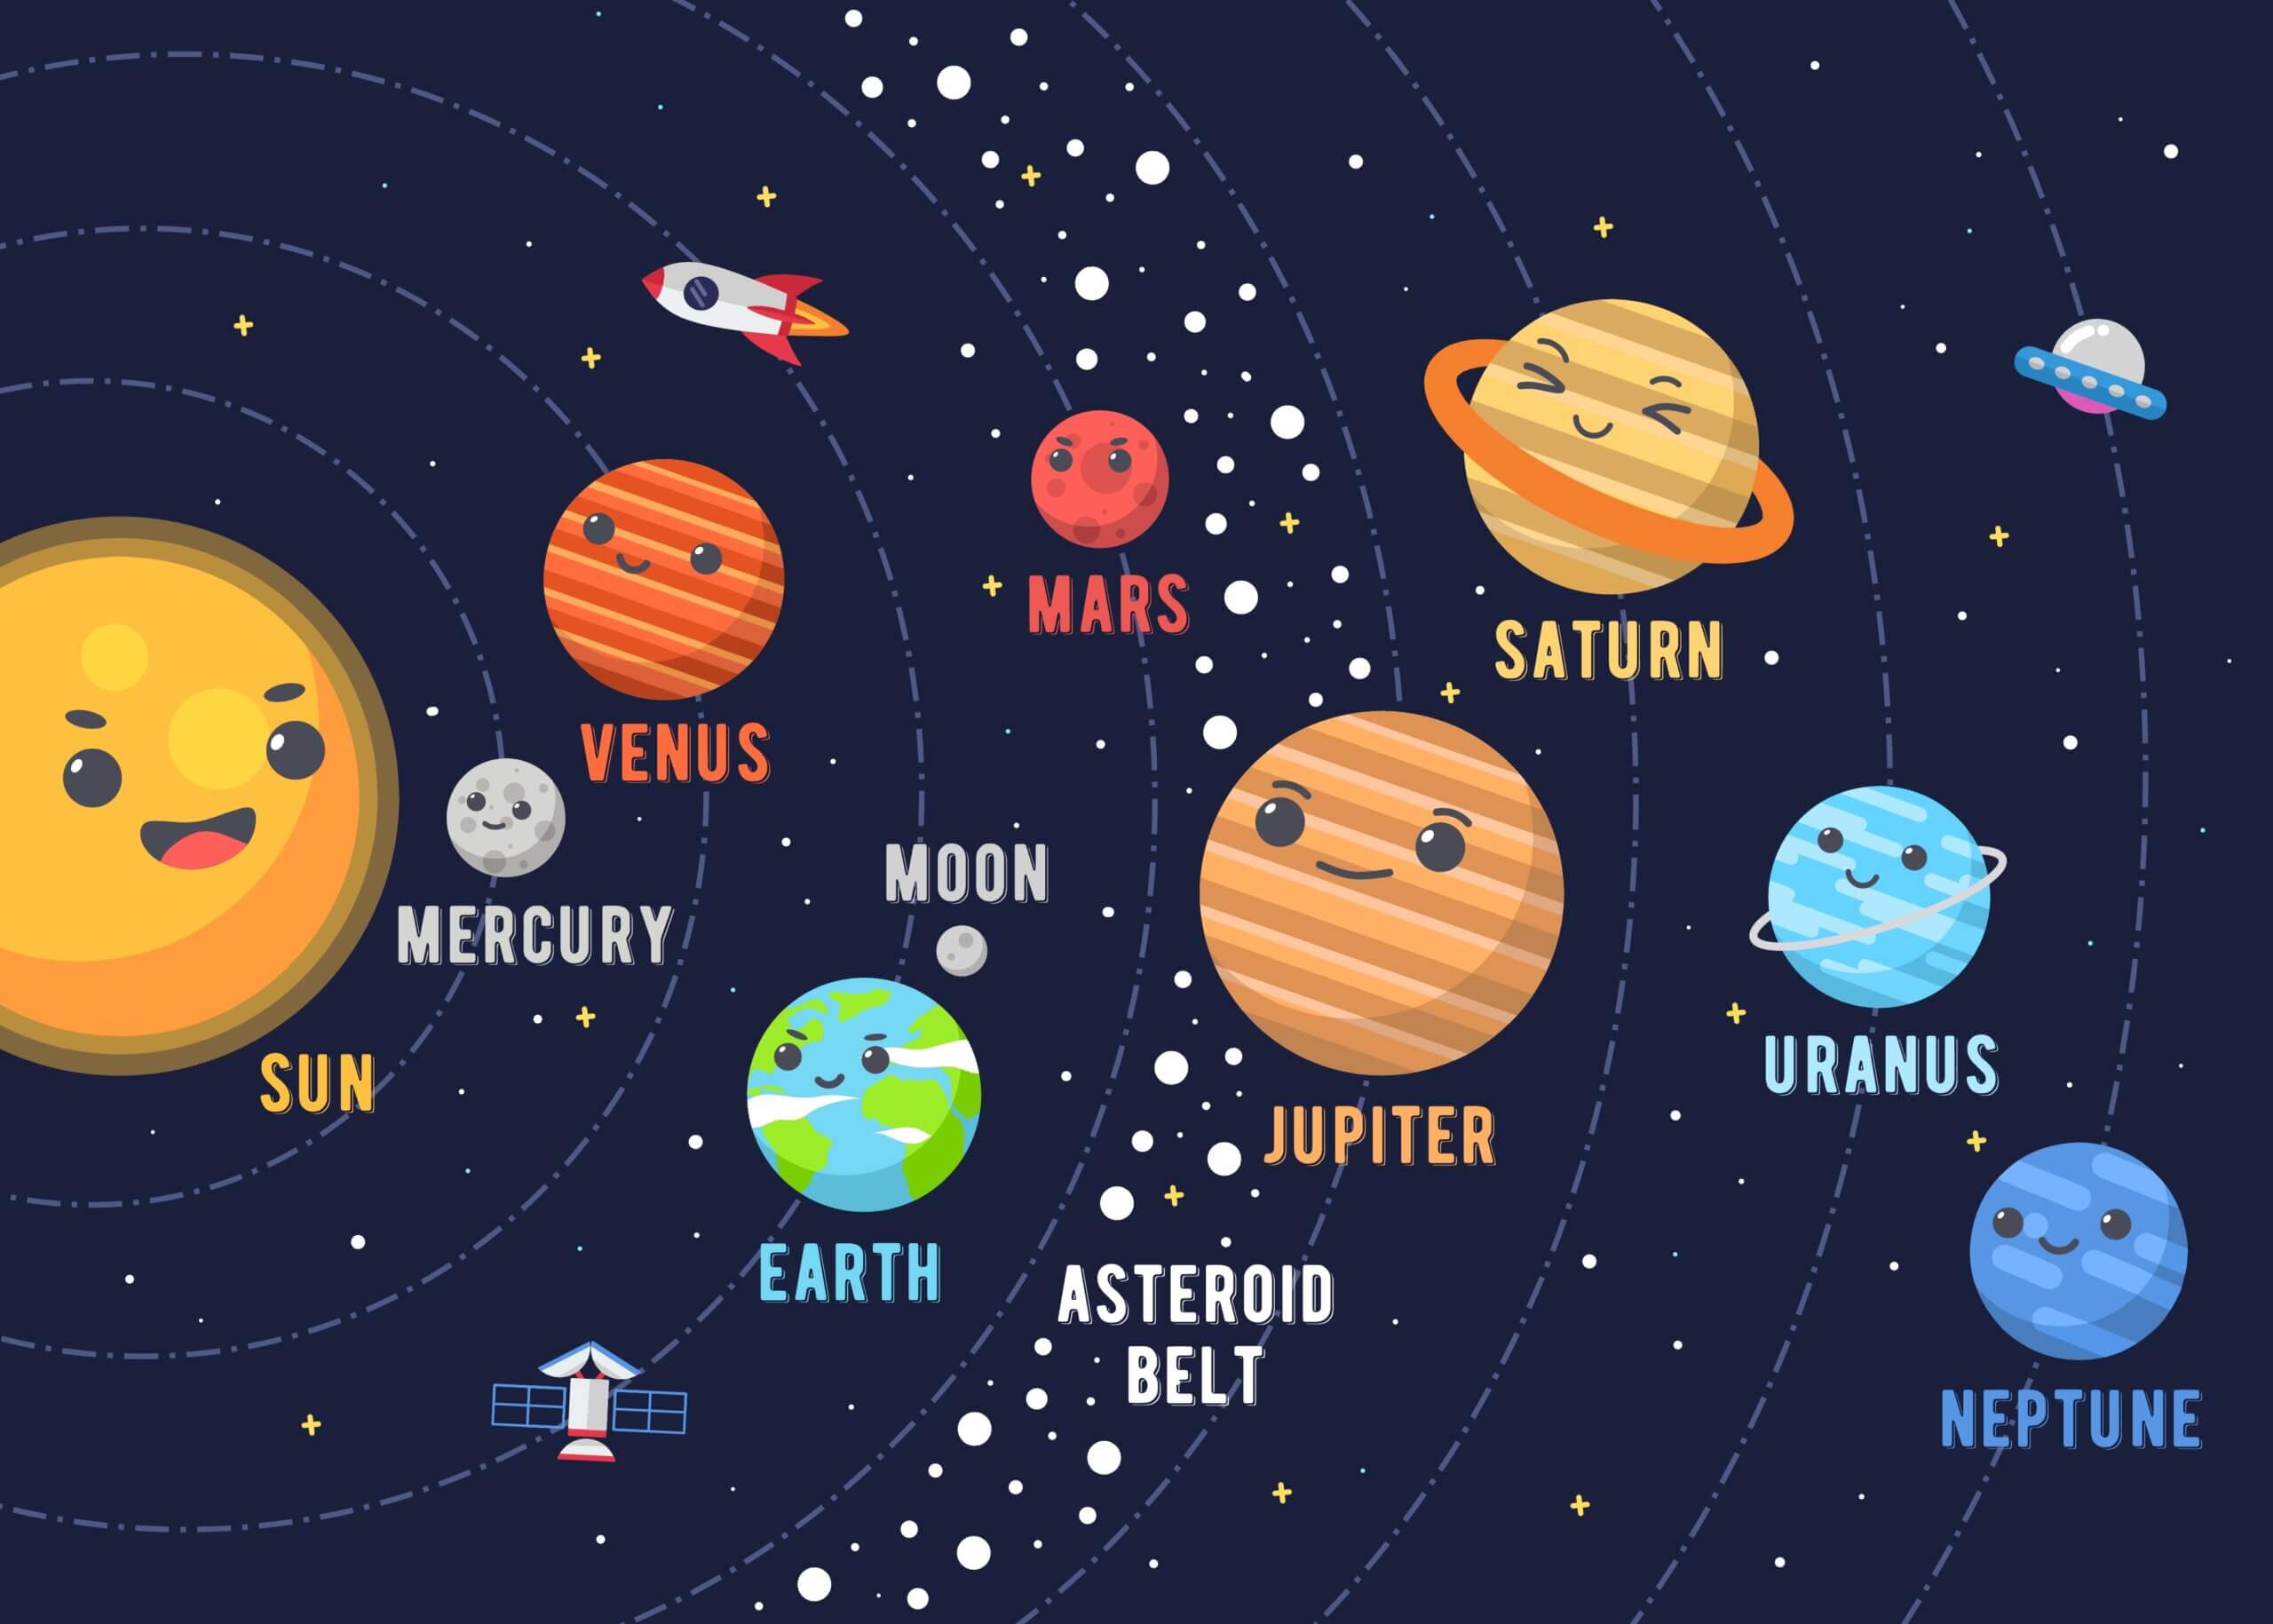 Gamification a scuola: come imparare il Sistema Solare attraverso un cartoon interattivo